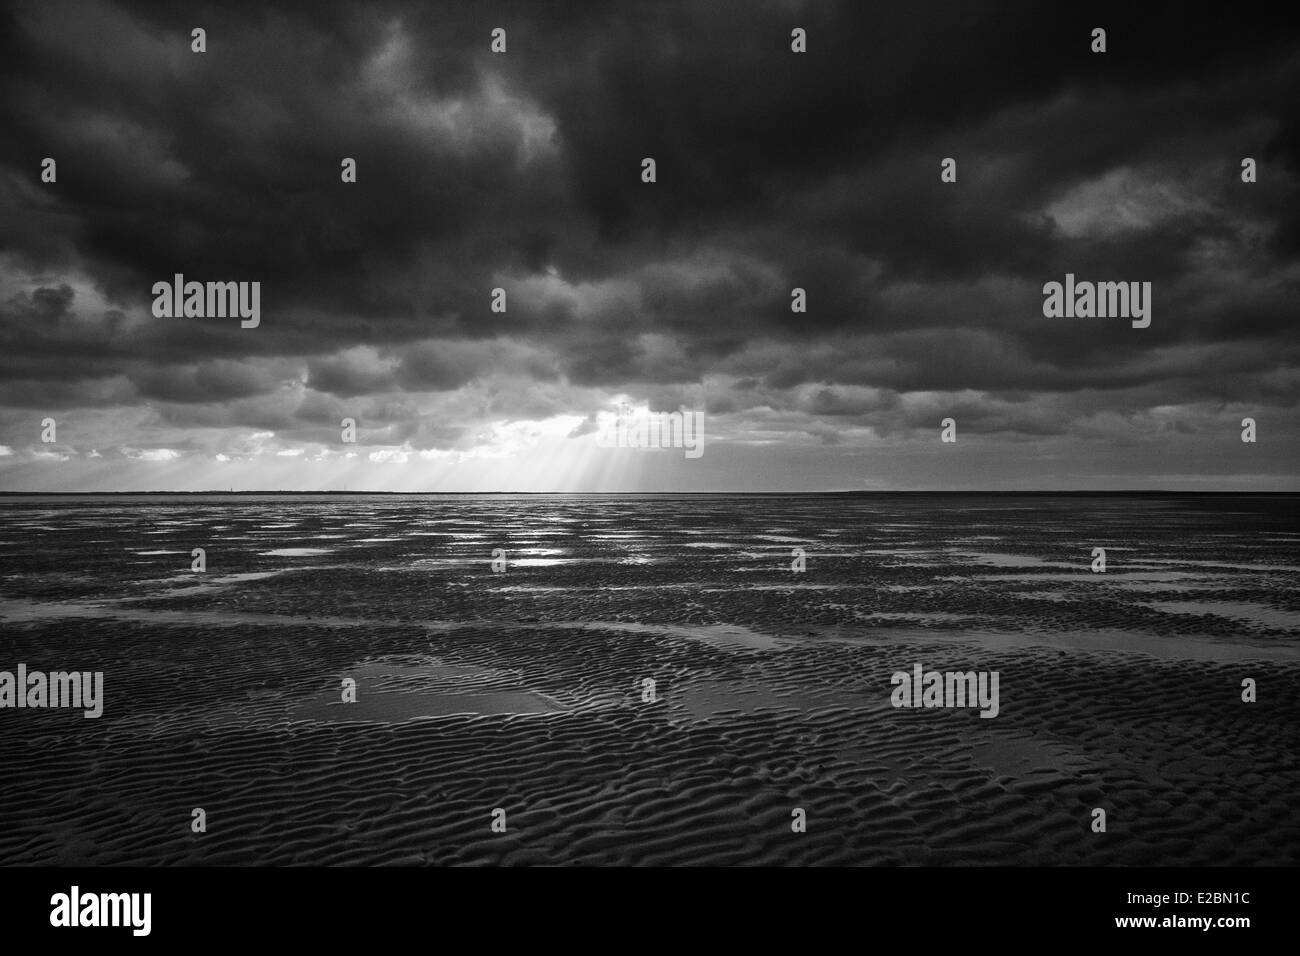 Imagen en blanco y negro clásico realizados durante una caminata en la marea baja llamado wadlopen a Rottumeroog Foto de stock